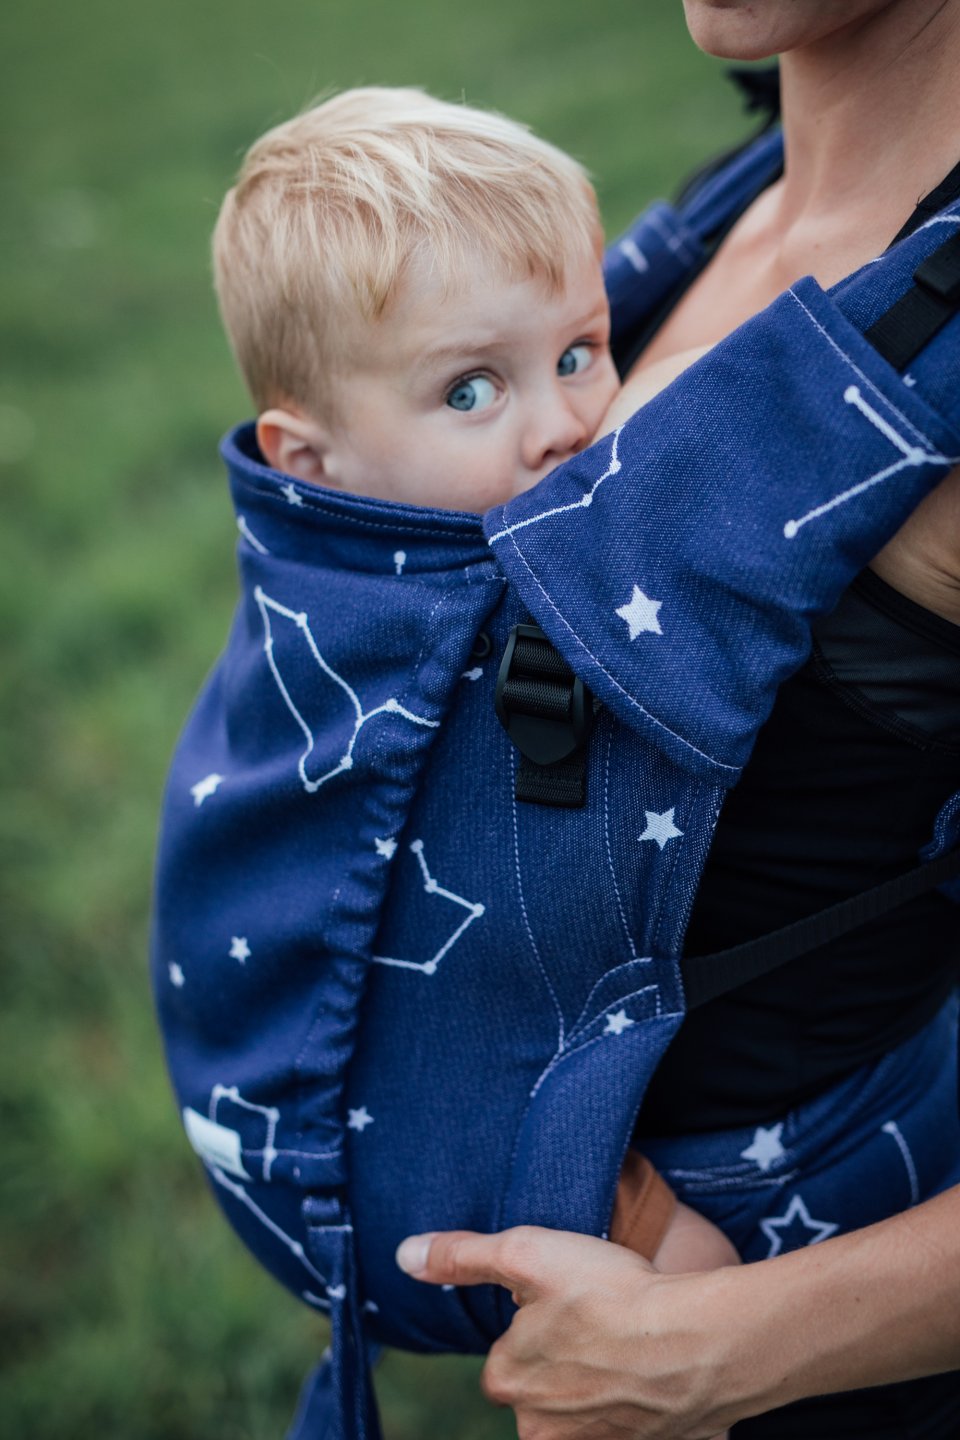 Porte-bébé Lenka 4ever - Constellation - bleu